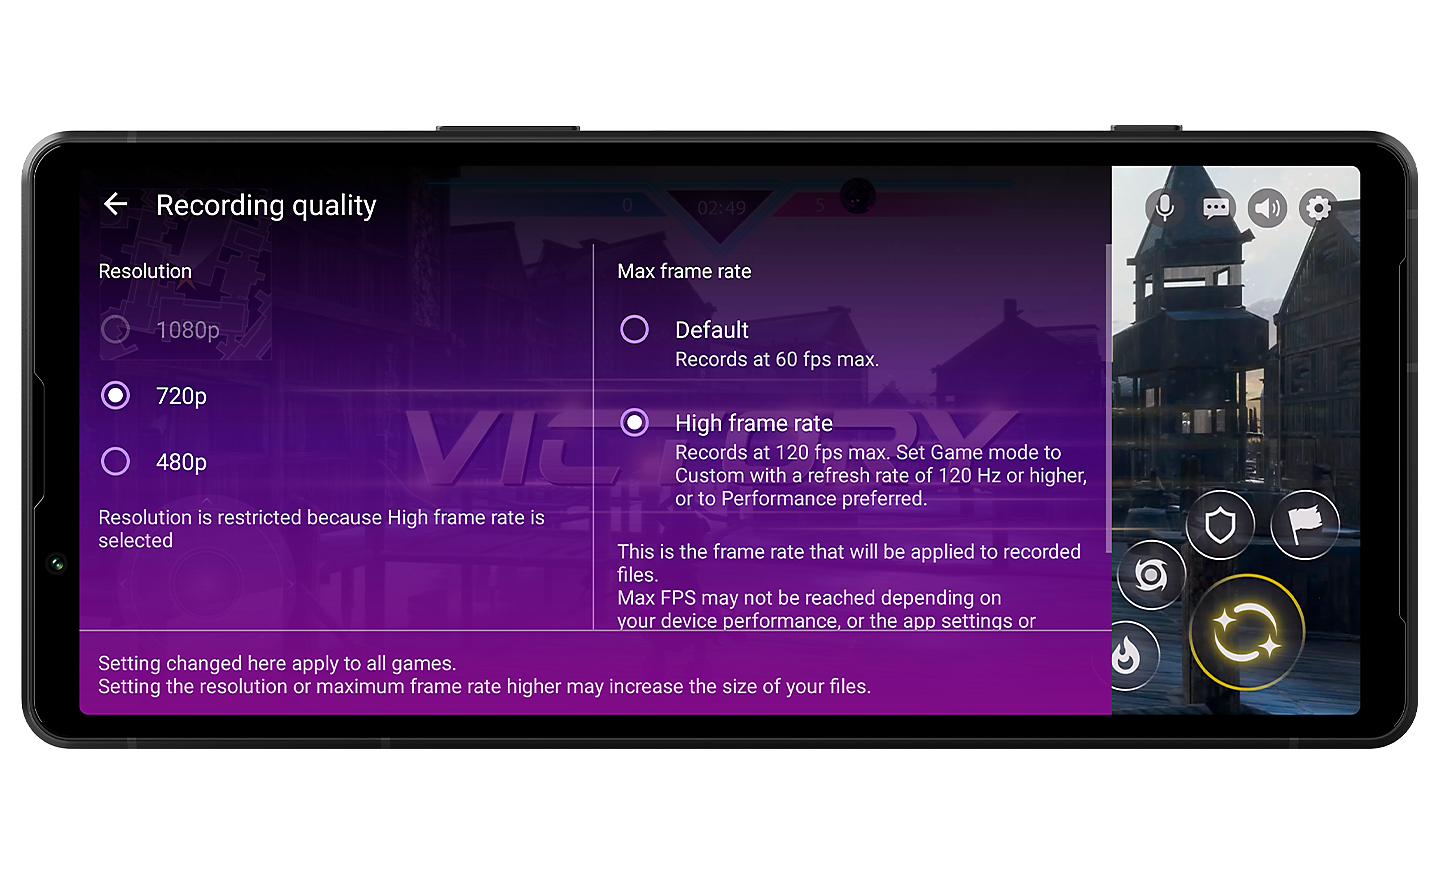 Hình ảnh Xperia 5 V với giao diện Chất lượng ghi trên màn hình